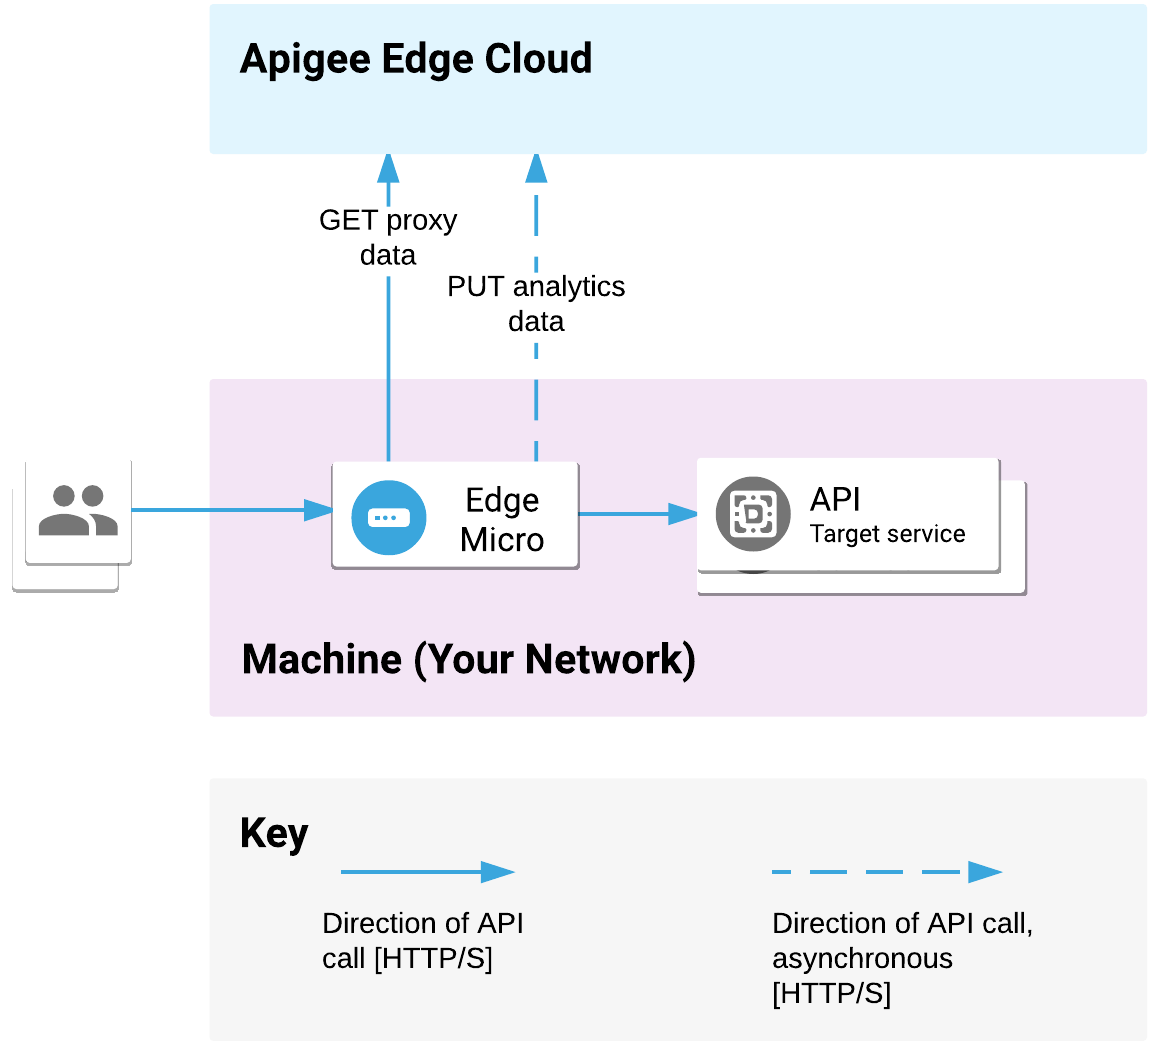 Uç mikro ağ geçidi, ağınıza dağıtıldı. İstemcilerden gelen API isteklerini işler ve hedef hizmetleri çağırır. Mikro ağ geçidi, proxy ve analiz verilerini Apigee Edge Cloud ile iletir.